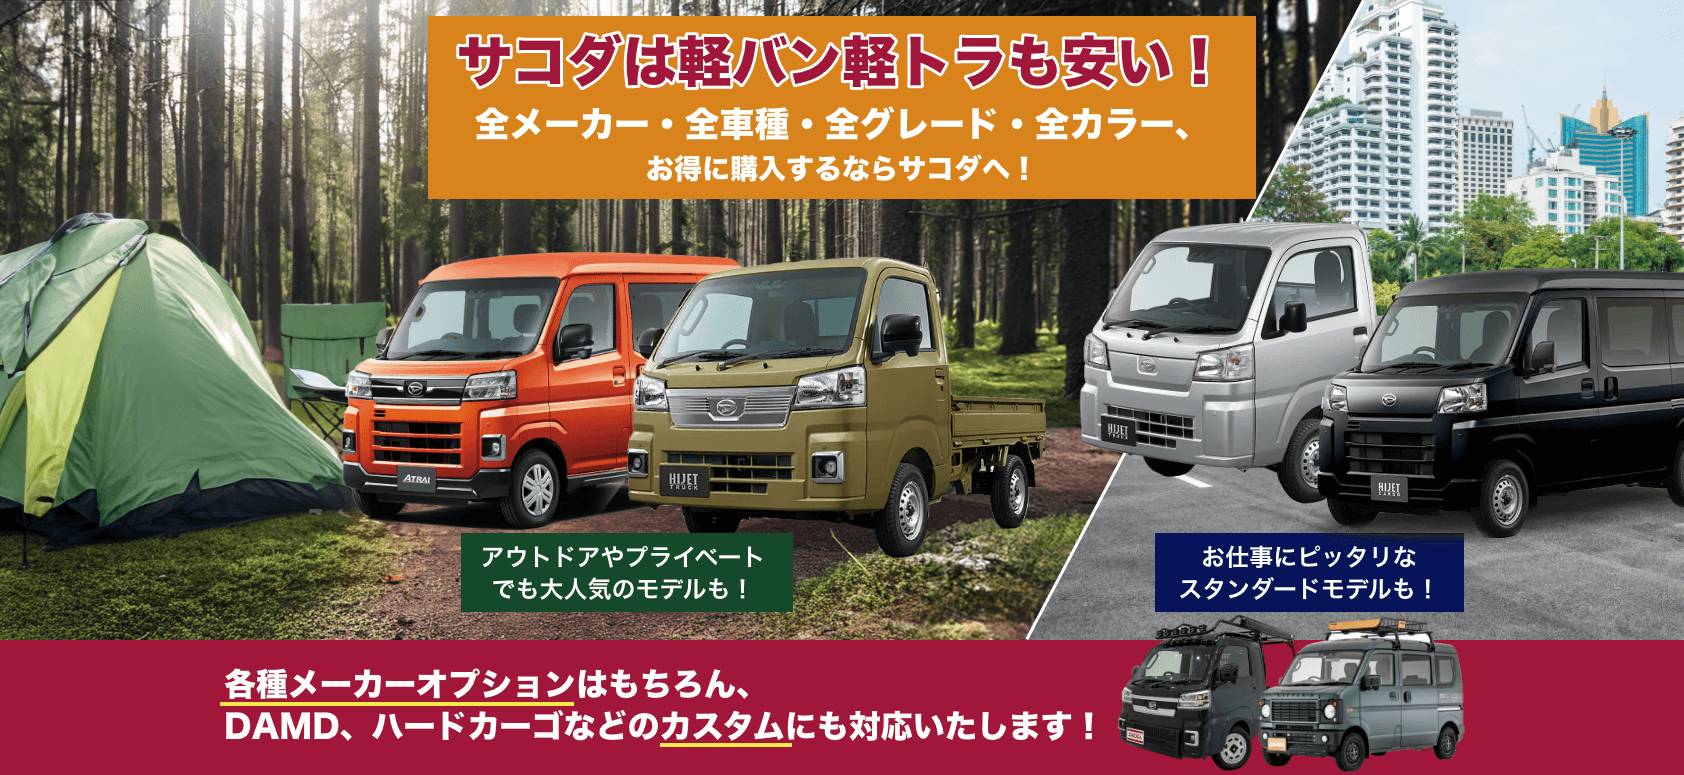 広島で軽バン・軽トラをお得に購入するならサコダがお勧め！各種メーカーオプションはもちろん、DAMD、ハードカーゴなどのカスタムにも対応いたします！